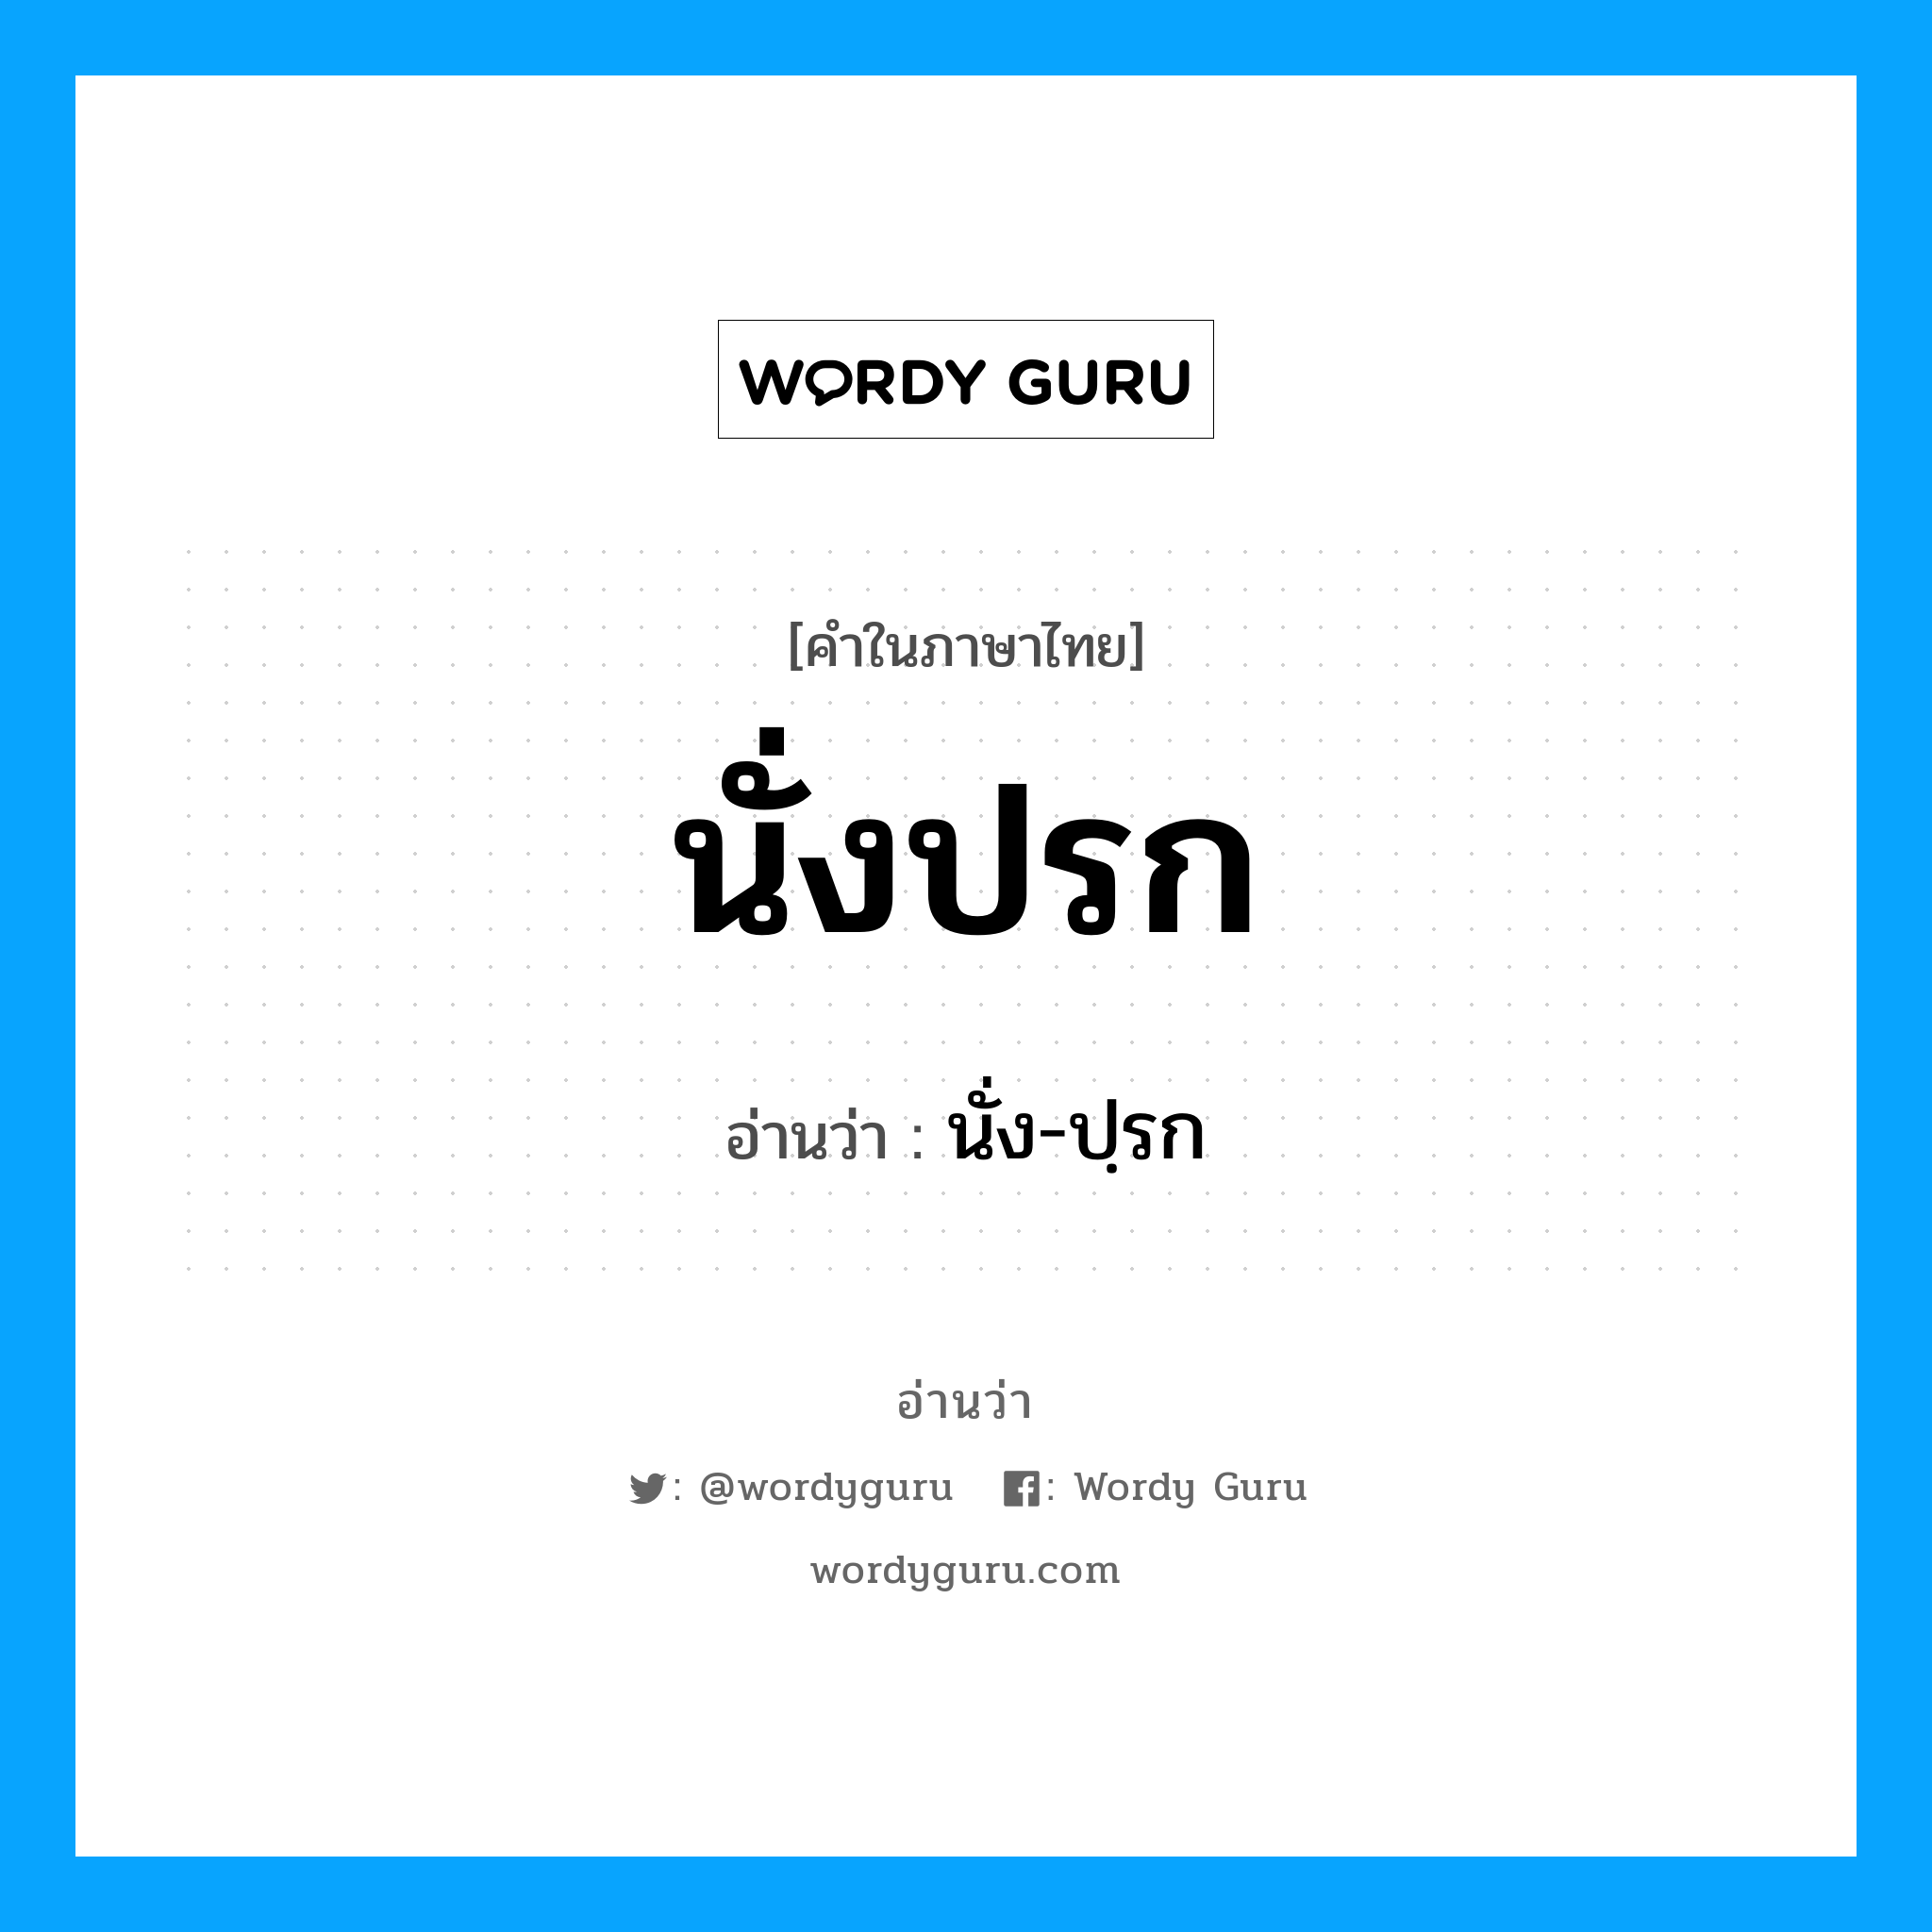 นั่ง-ปฺรก เป็นคำอ่านของคำไหน?, คำในภาษาไทย นั่ง-ปฺรก อ่านว่า นั่งปรก